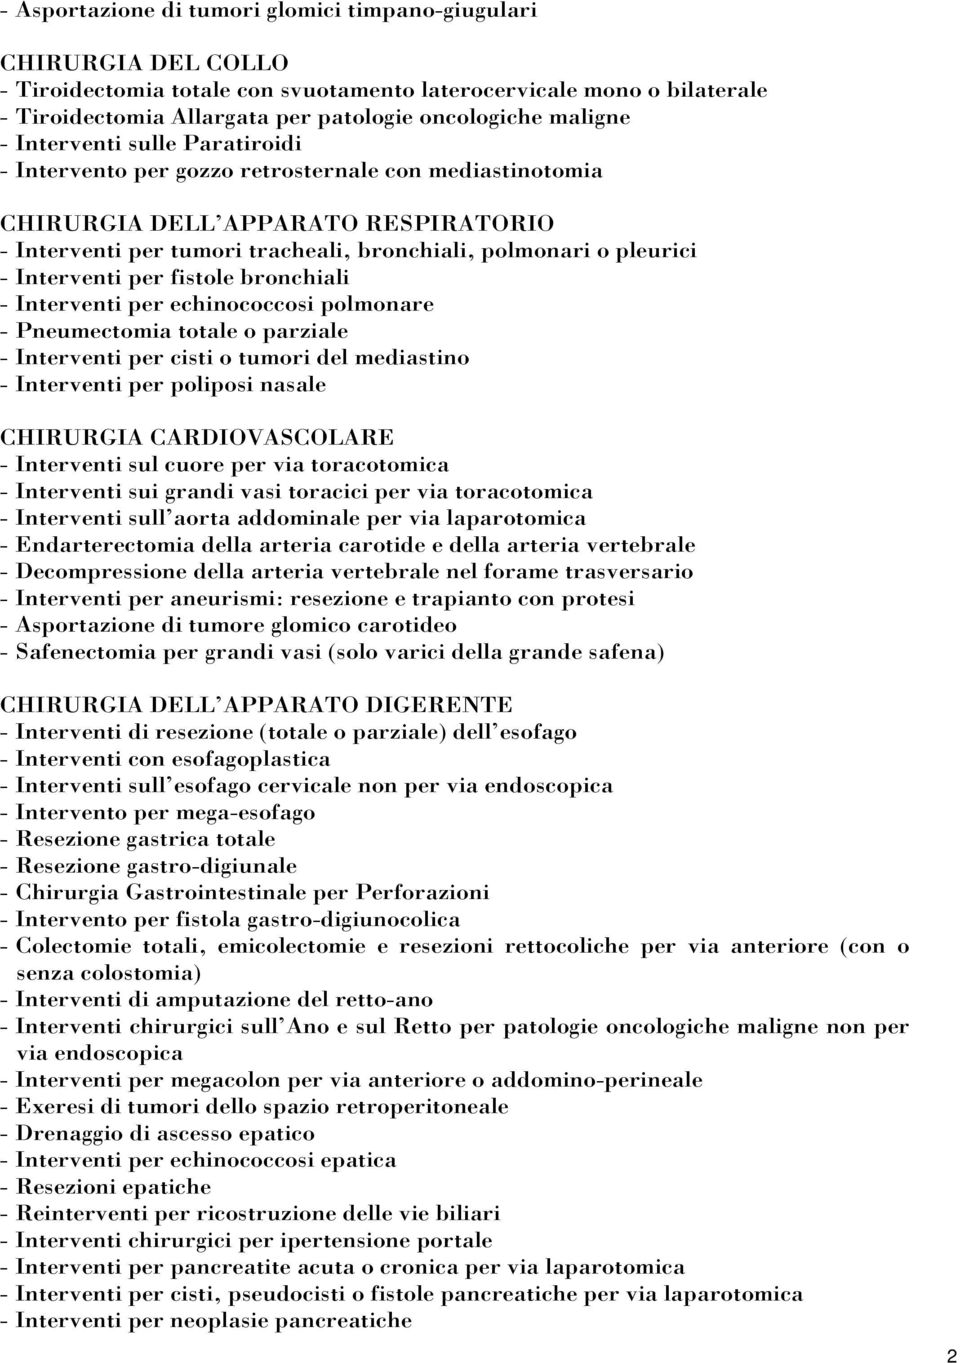 pleurici - Interventi per fistole bronchiali - Interventi per echinococcosi polmonare - Pneumectomia totale o parziale - Interventi per cisti o tumori del mediastino - Interventi per poliposi nasale